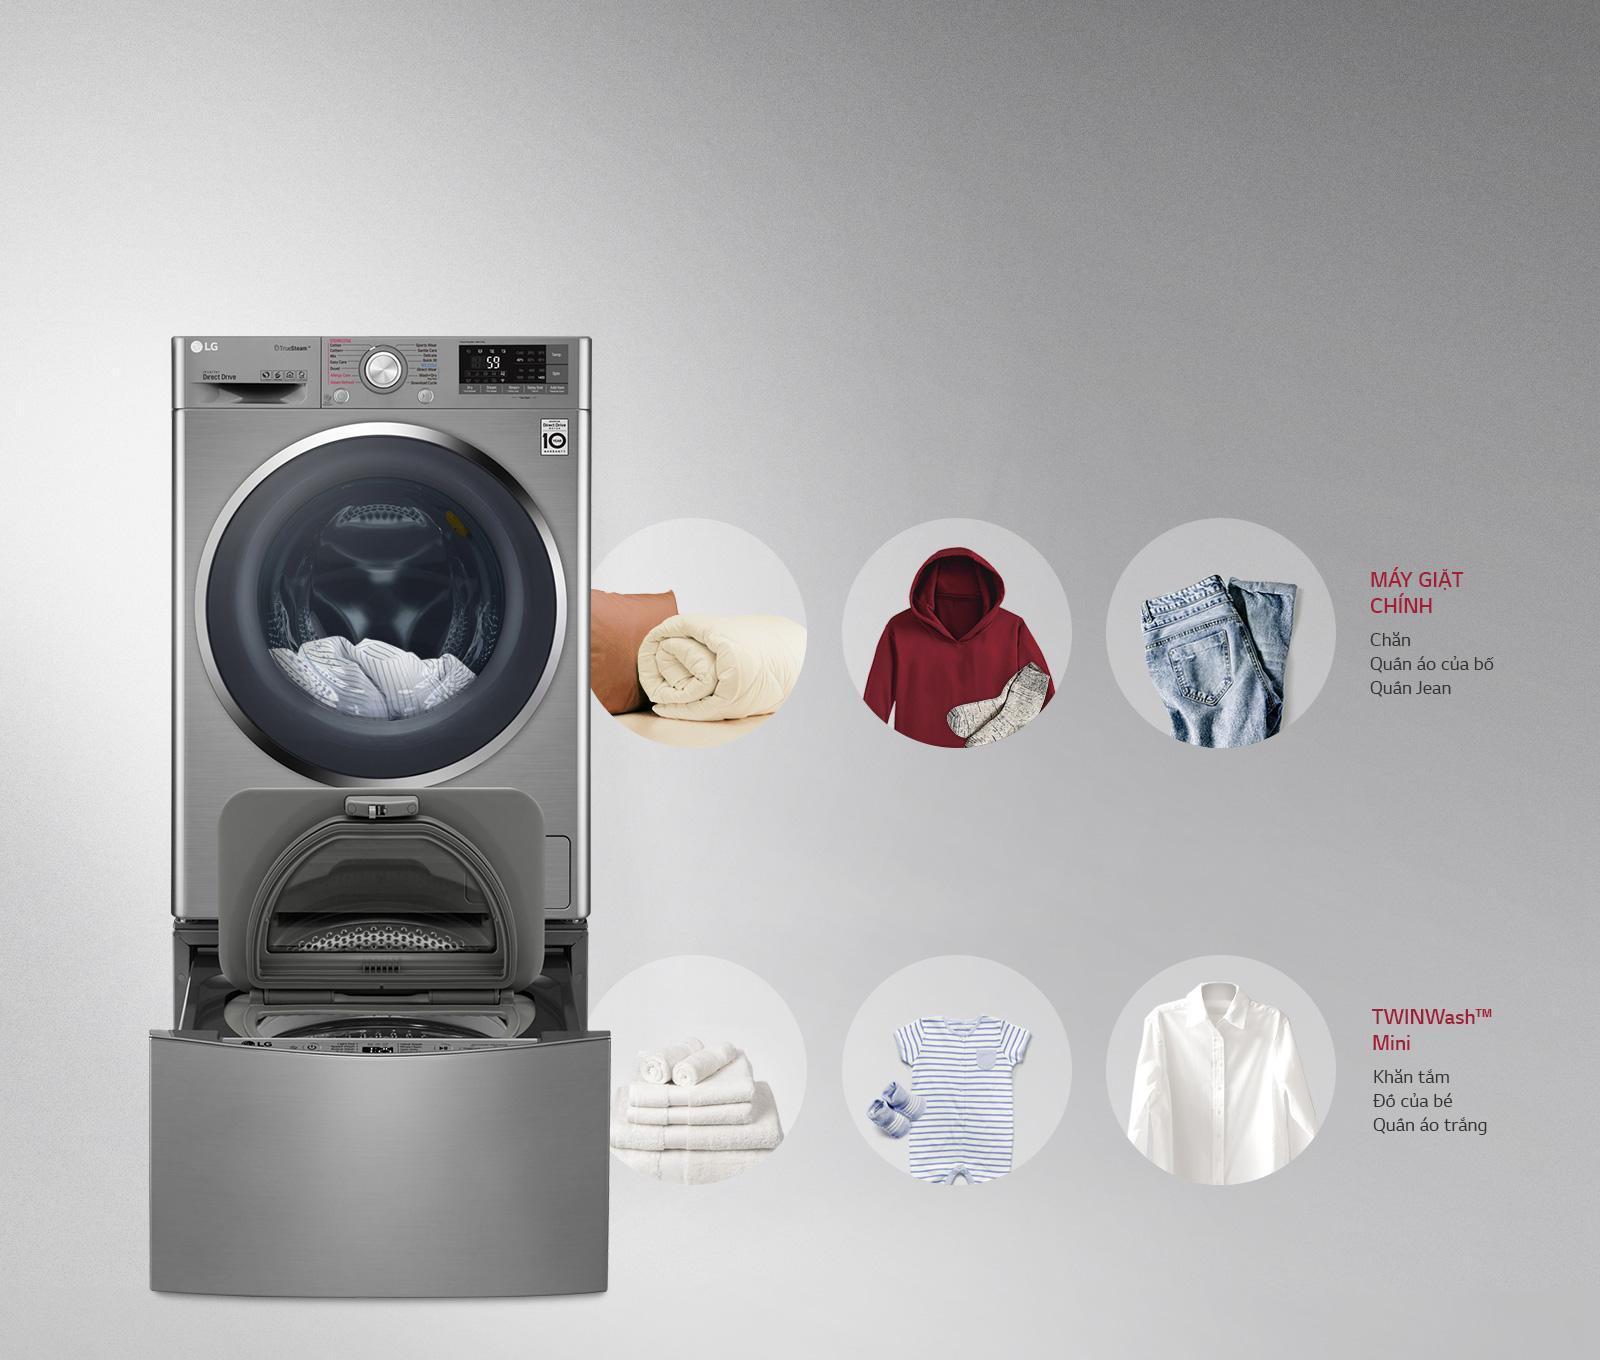 Kinh nghiệm mua máy giặt có nhiều tính năng thông minh